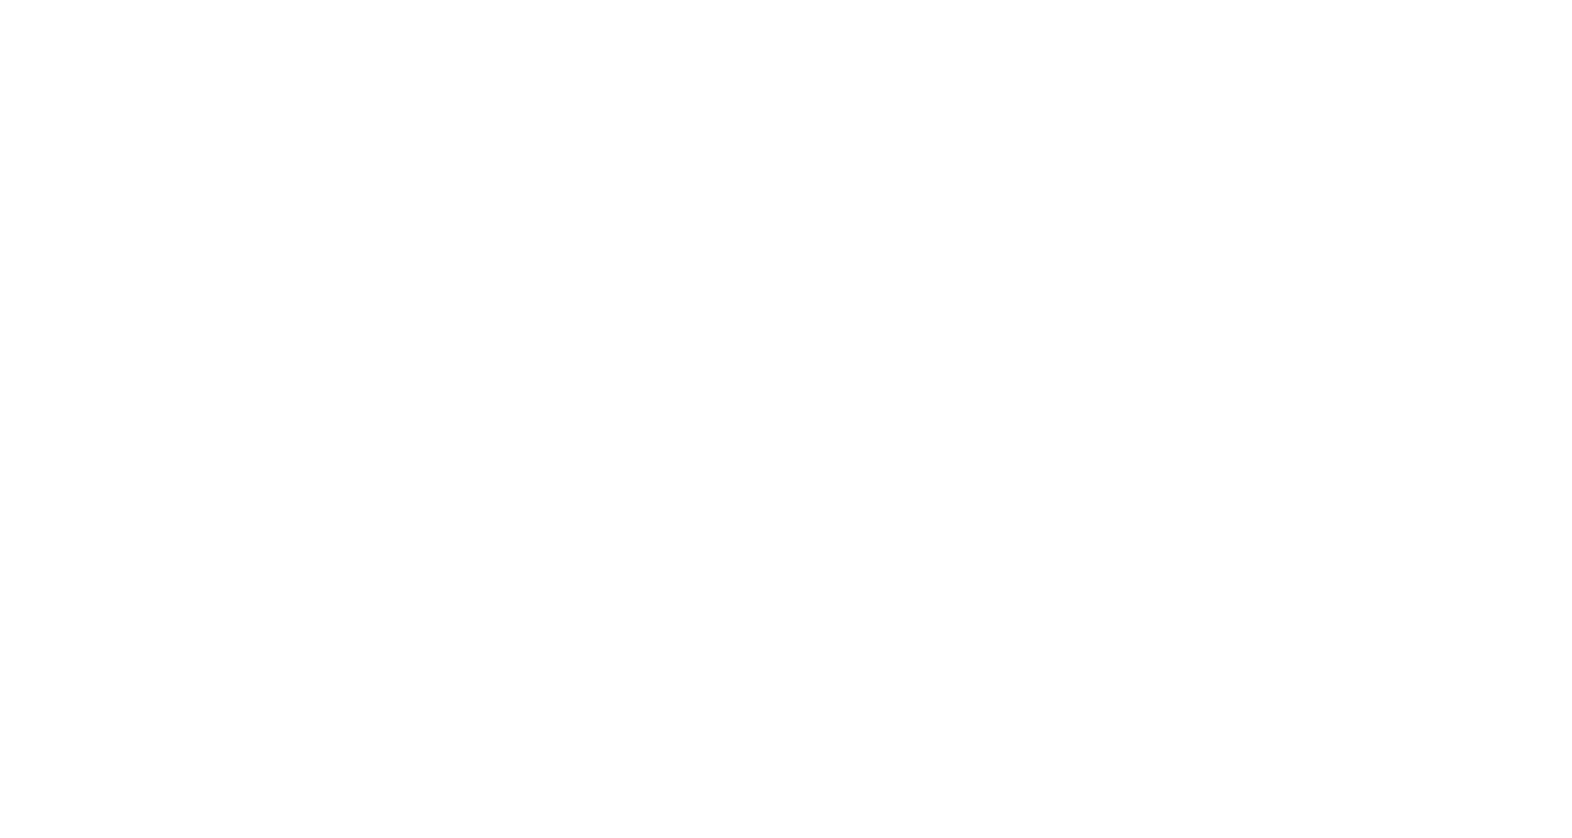 Lanvin Group logo for dark backgrounds (transparent PNG)